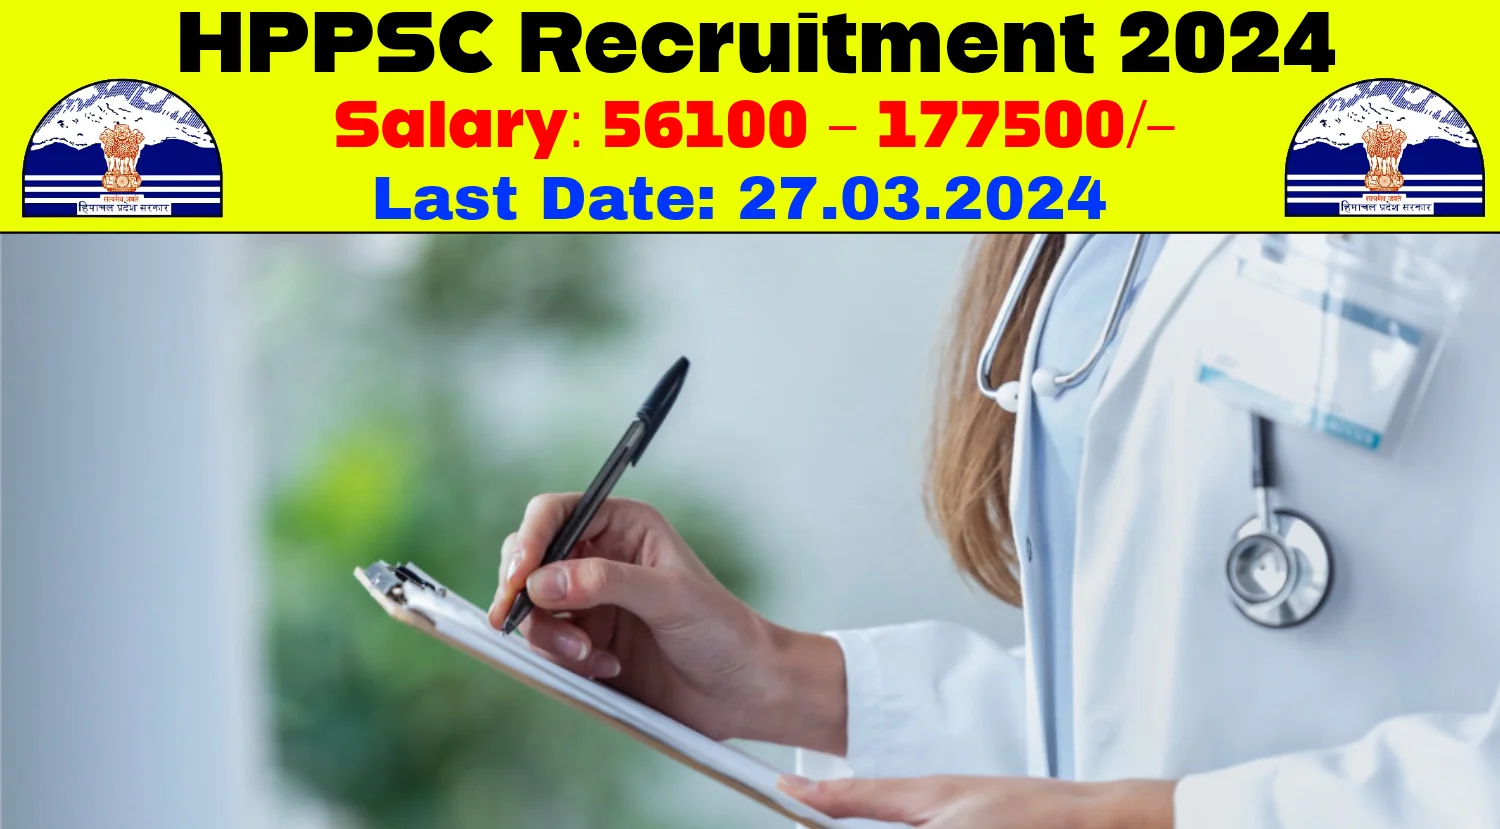 HPPSC Recruitment 2024